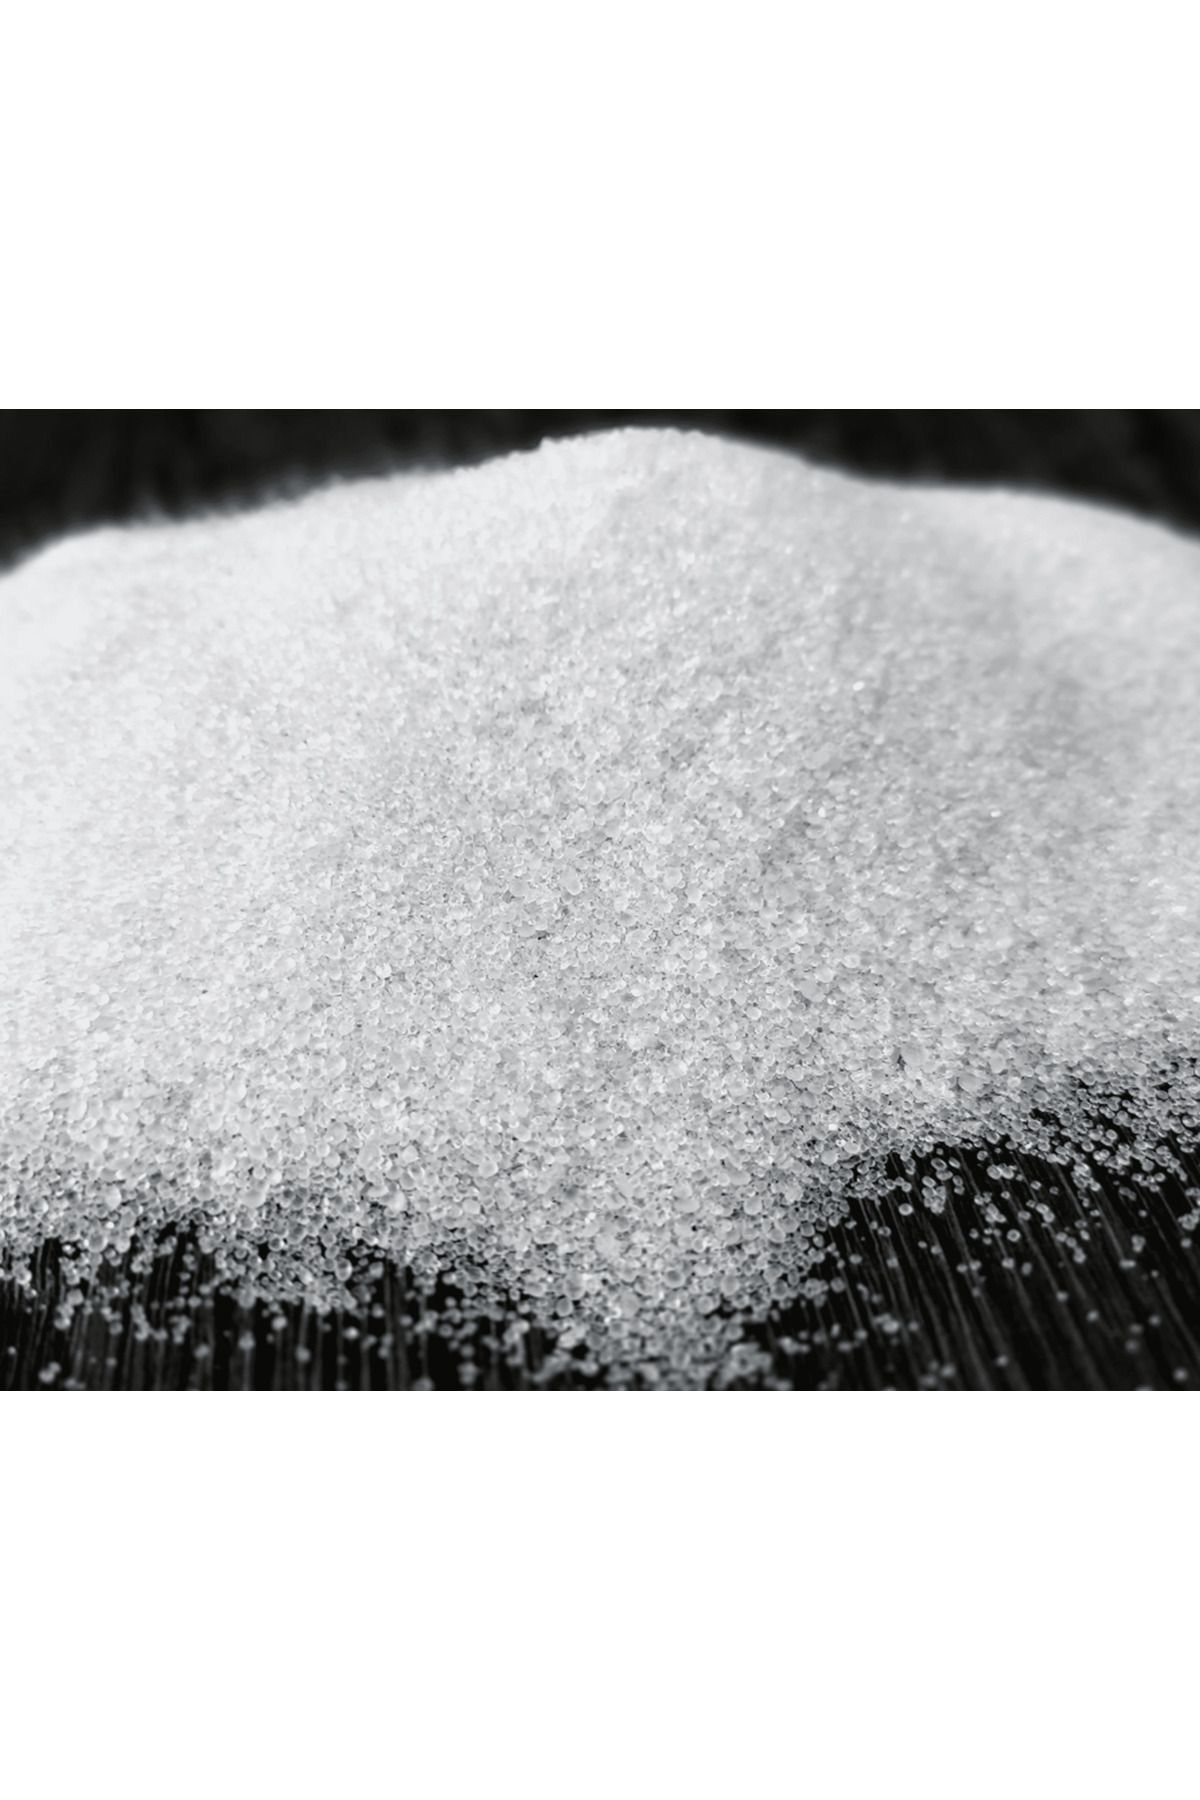 İGSAŞ Amonyum Sülfat Şeker Gübresi Çim Gübresi 5 Kg